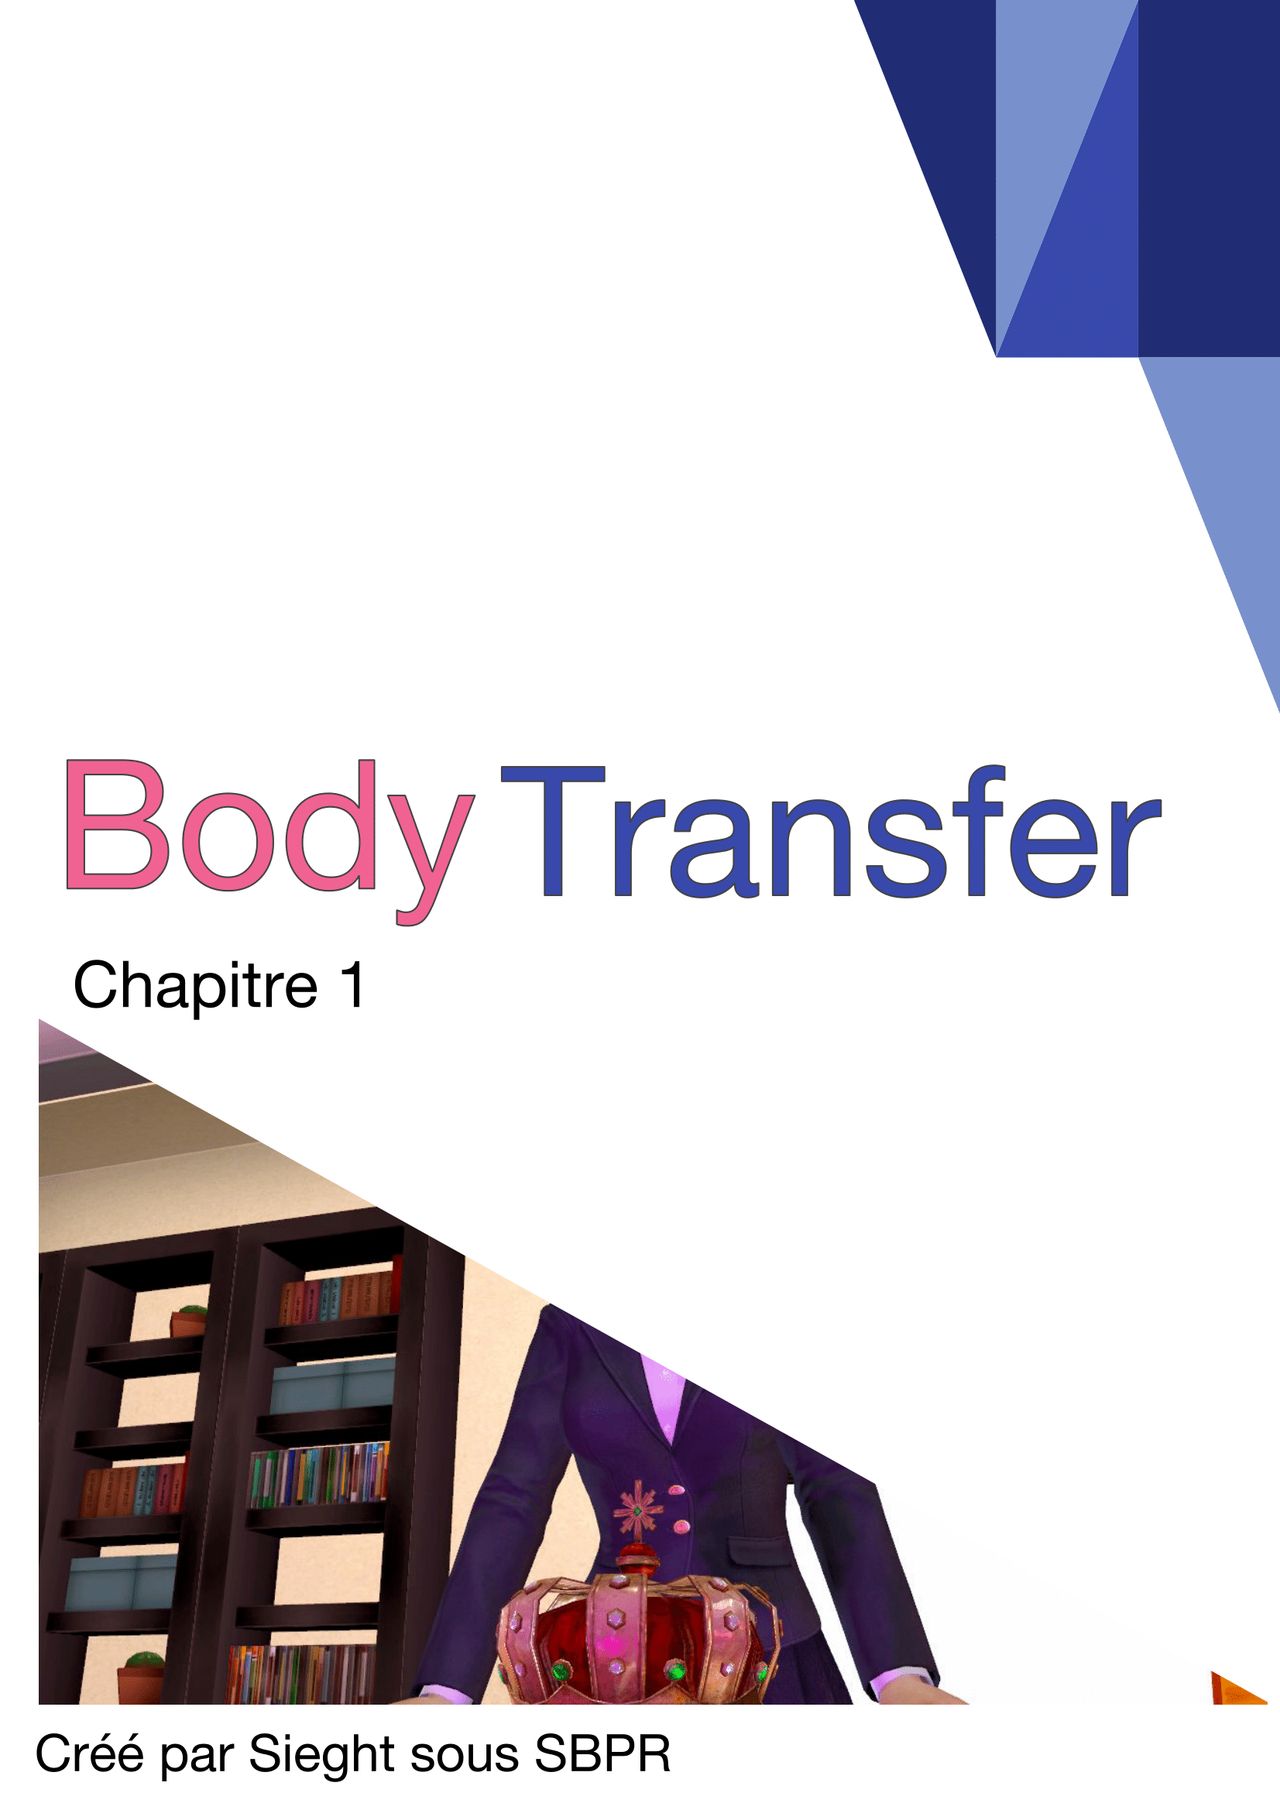 1021295 main Body Transfer Chapitre 1 01